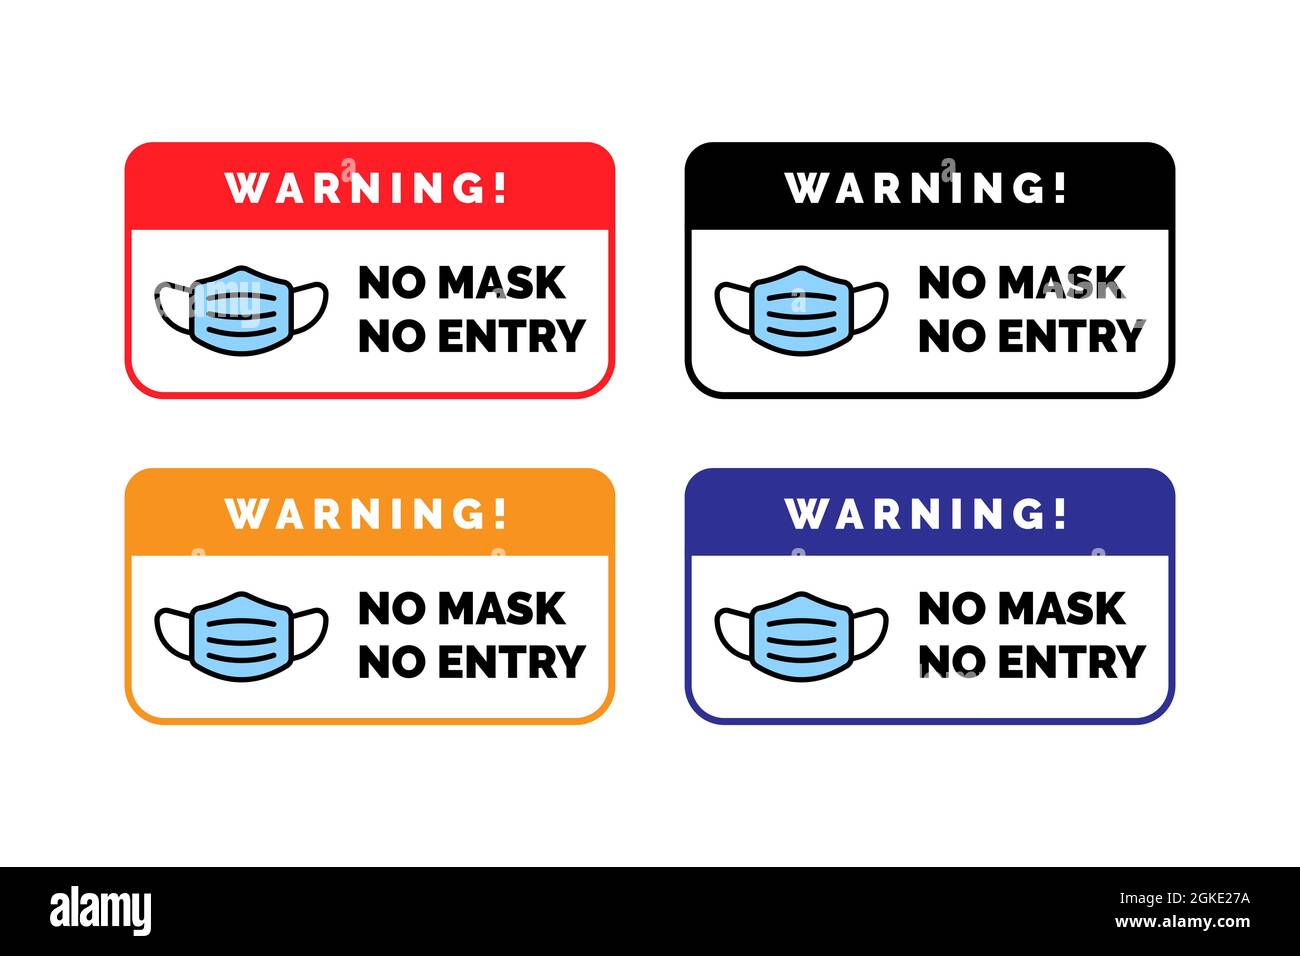 Warnschild für Gesichtsmaske erforderlich. Keine Gesichtsmaske, kein Eintrittsschild Stockfoto